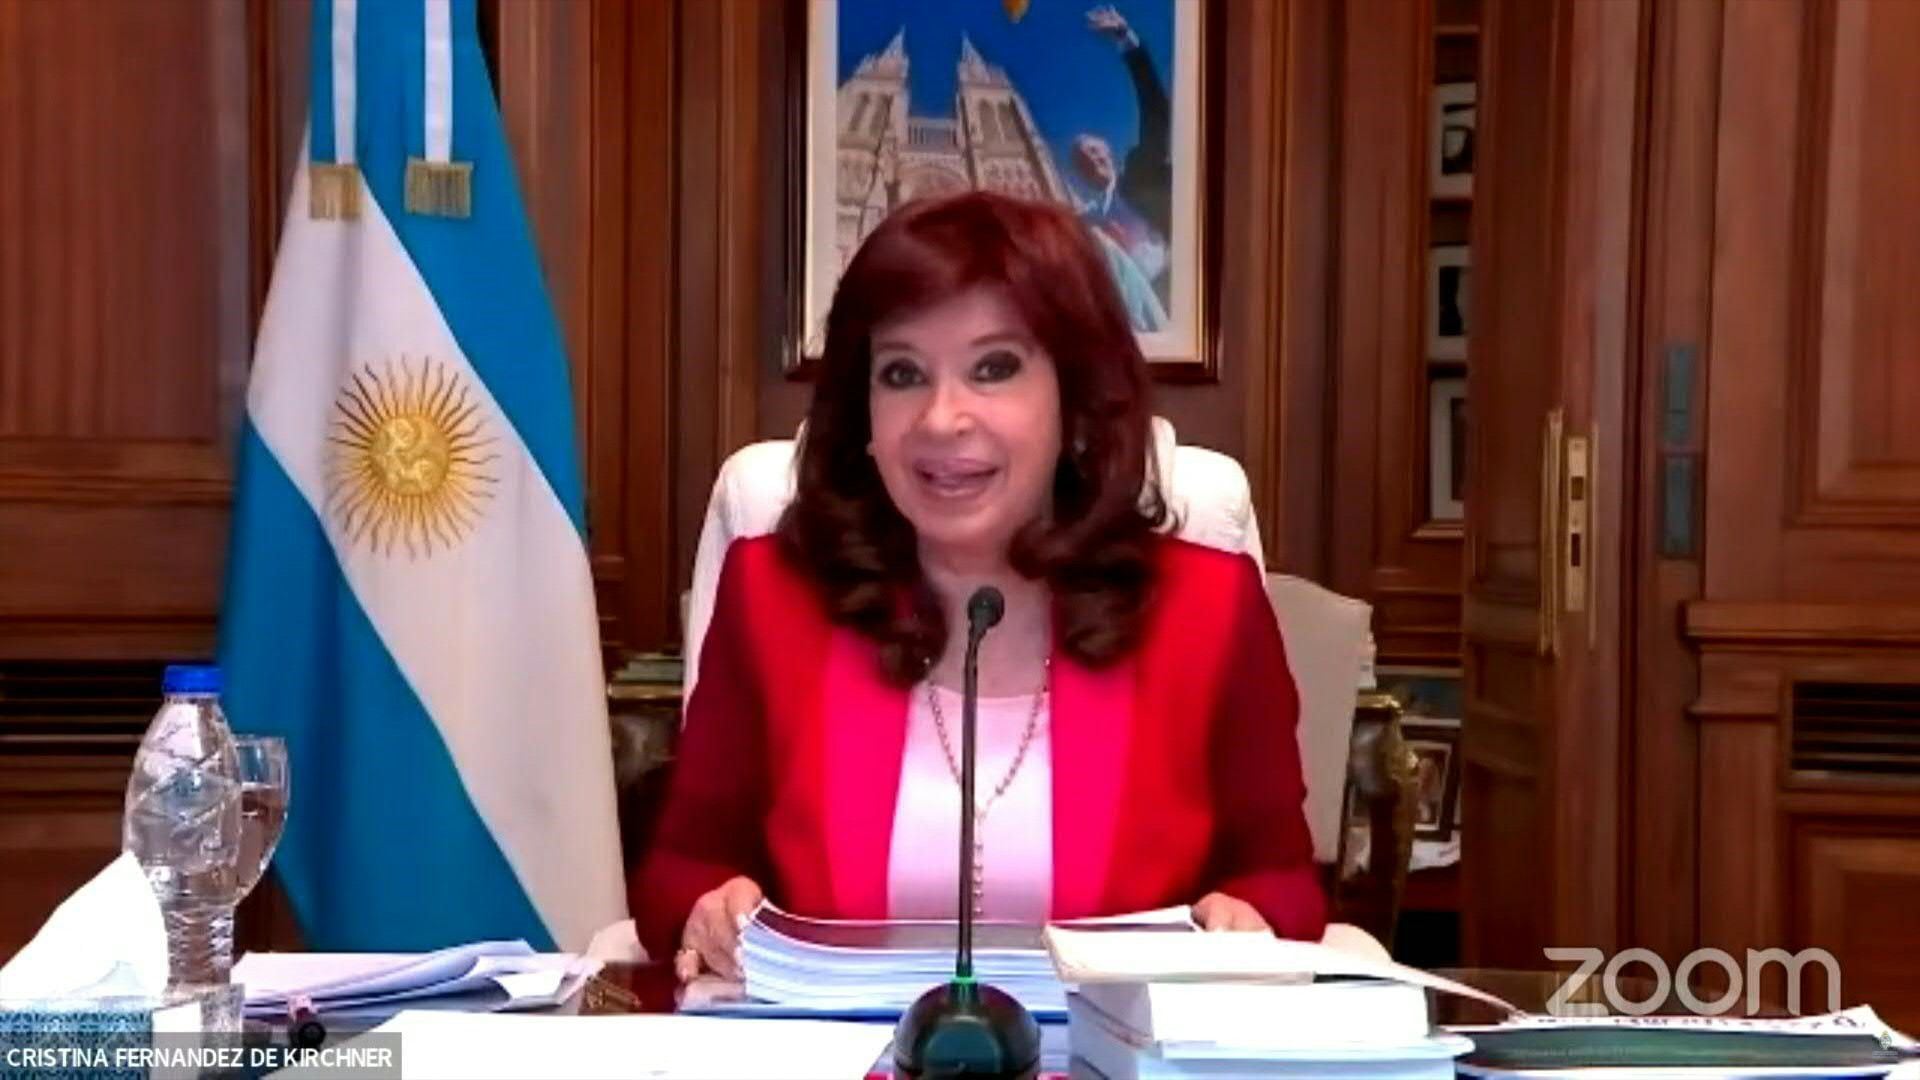 La agenda de Cristina Kirchner está completamente dedicada al juicio que protagoniza